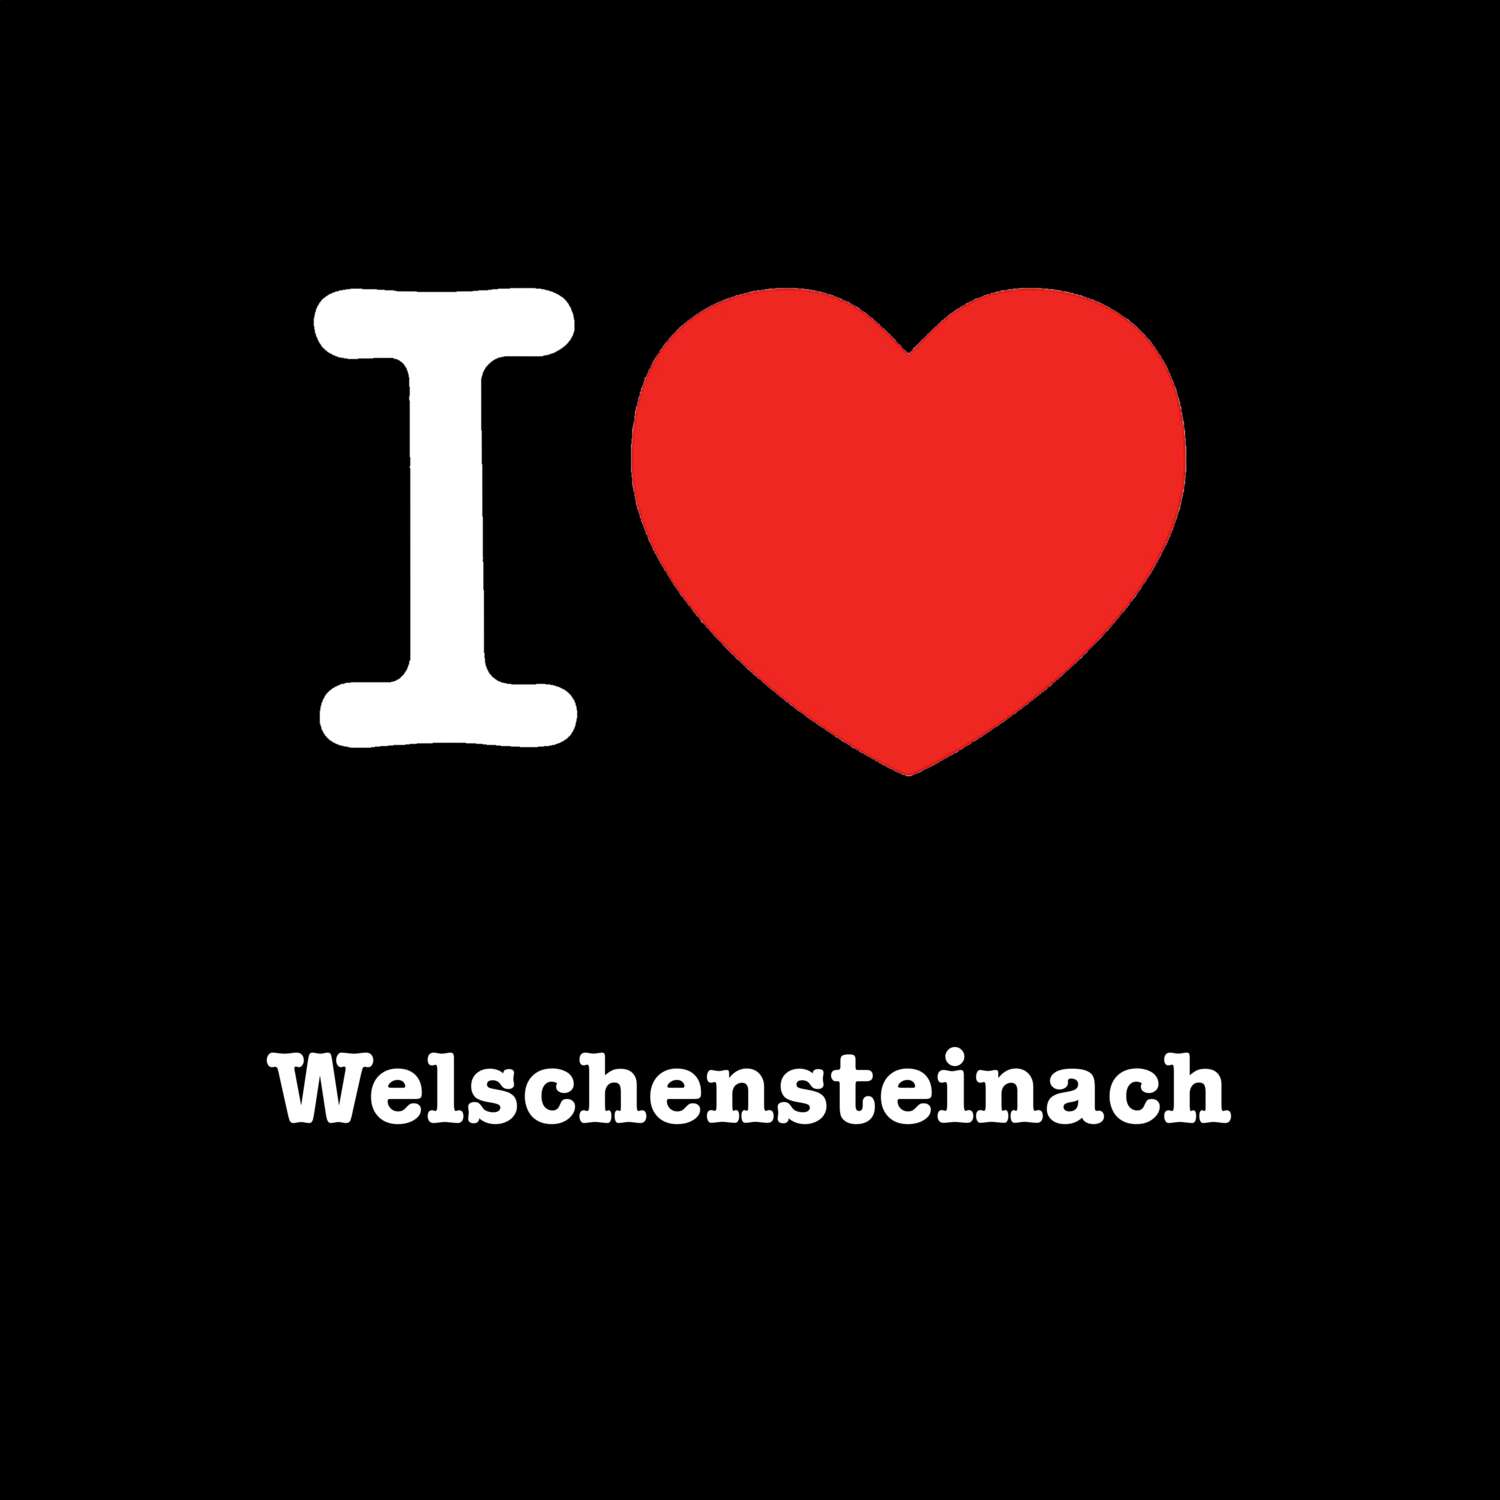 Welschensteinach T-Shirt »I love«